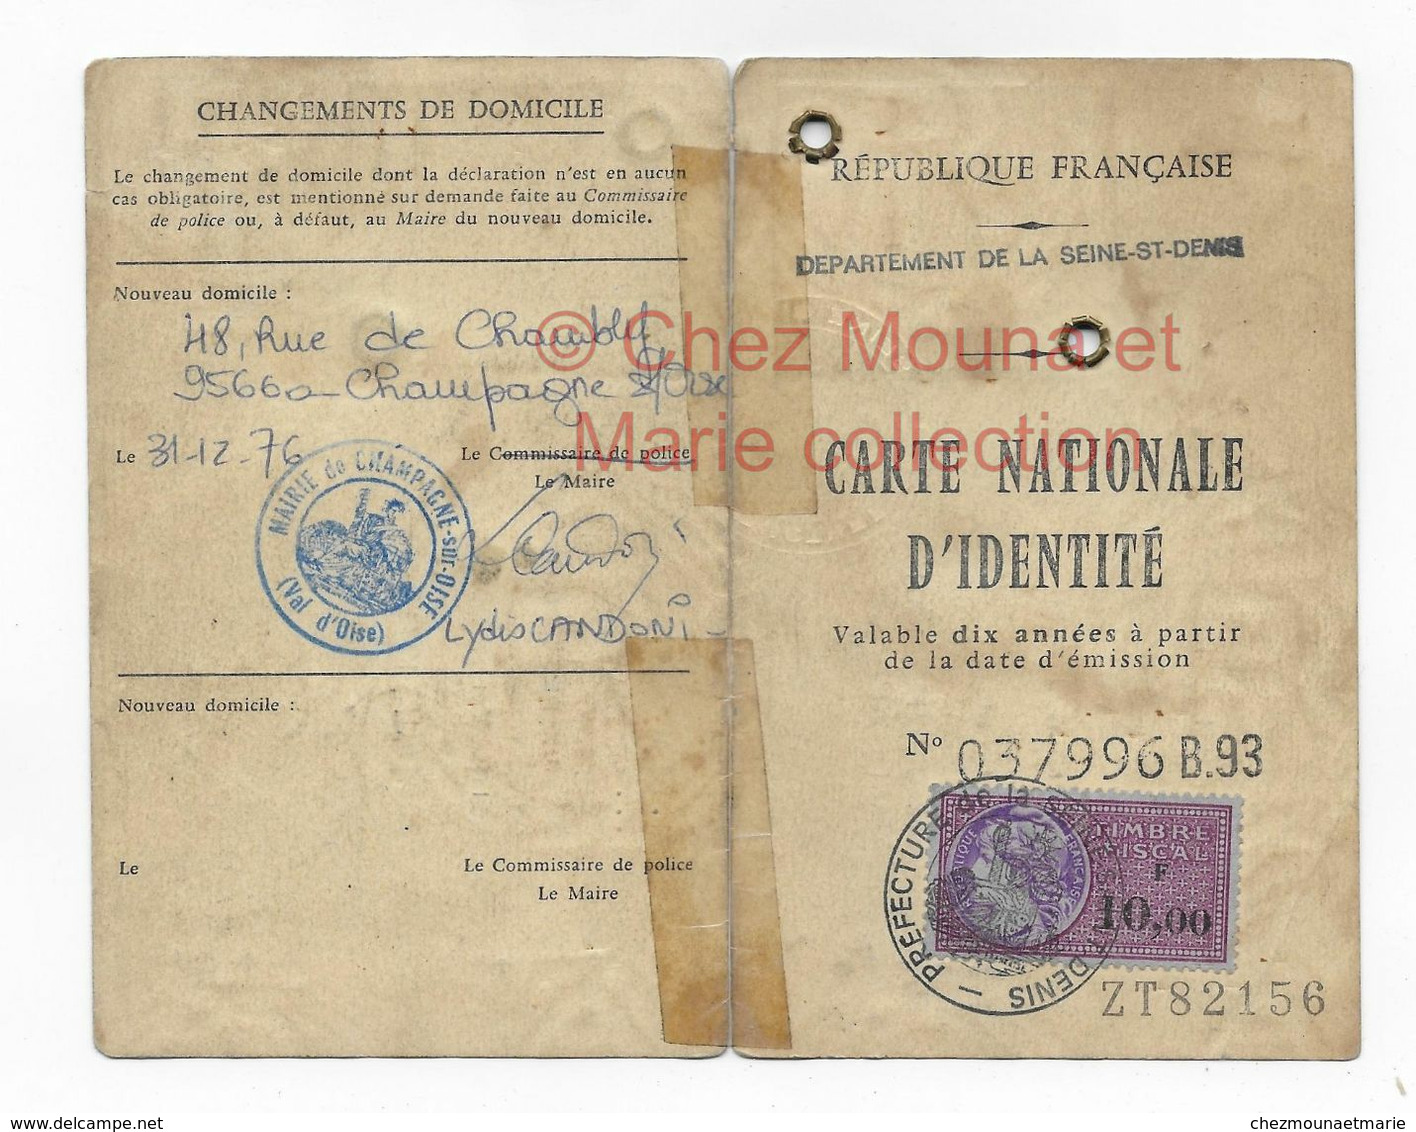 1971 THUILIER GEORGES NE 1901 PARIS 20 HABITANT RUE DES PRUNIERS DRANCY PUIS RUE DE CHAMBLY CHAMPAGNE - CARTE IDENTITE - Documents Historiques